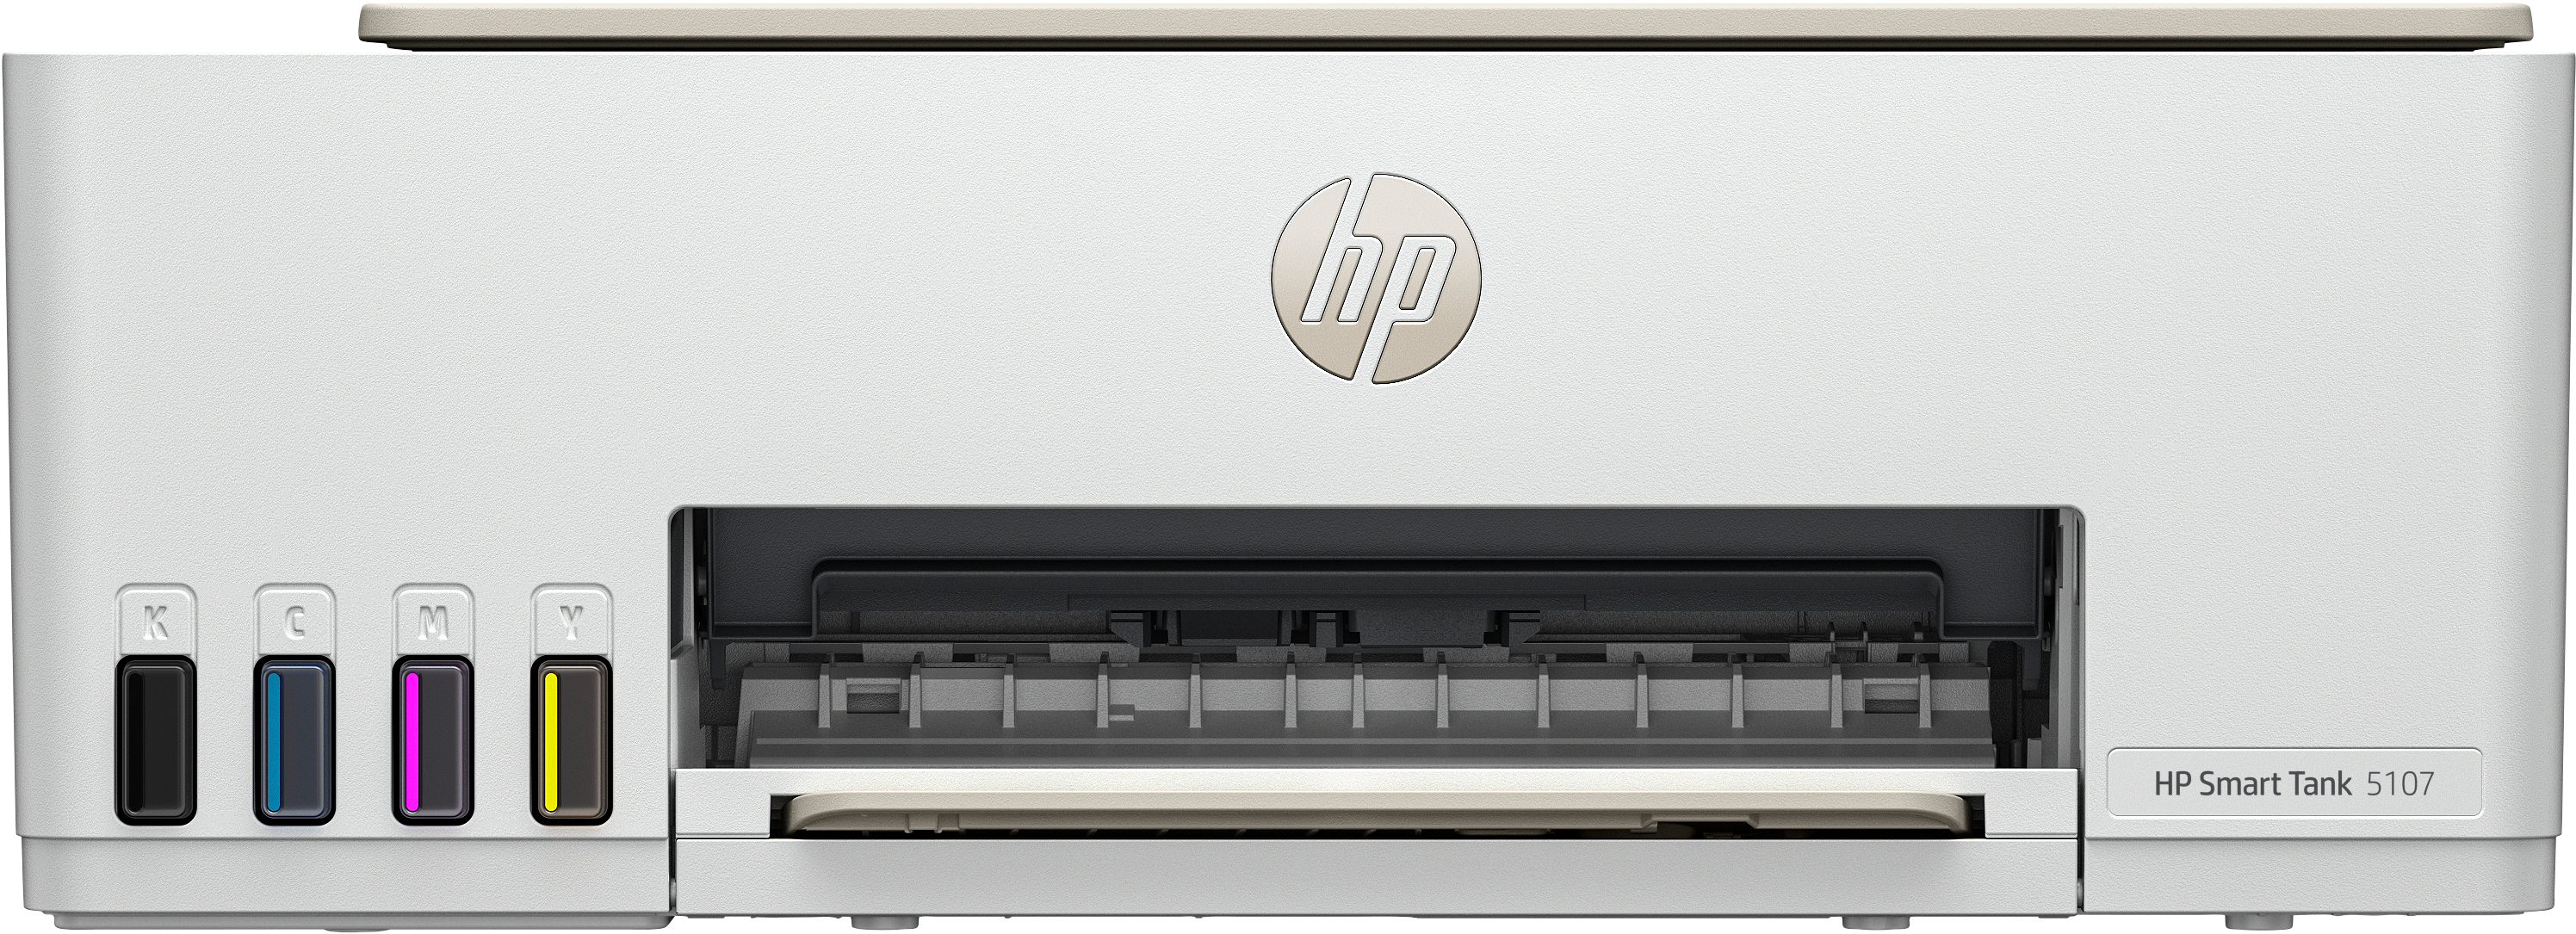 HP HP Smart Tank 5107 All-in-One-printer, Kleur, Printer voor Thuis en thuiskantoor, Printen, kopi&#235;ren, scannen, Draadloos; printertank voor grote volumes; printen vanaf telefoon of tablet; scannen naar pdf